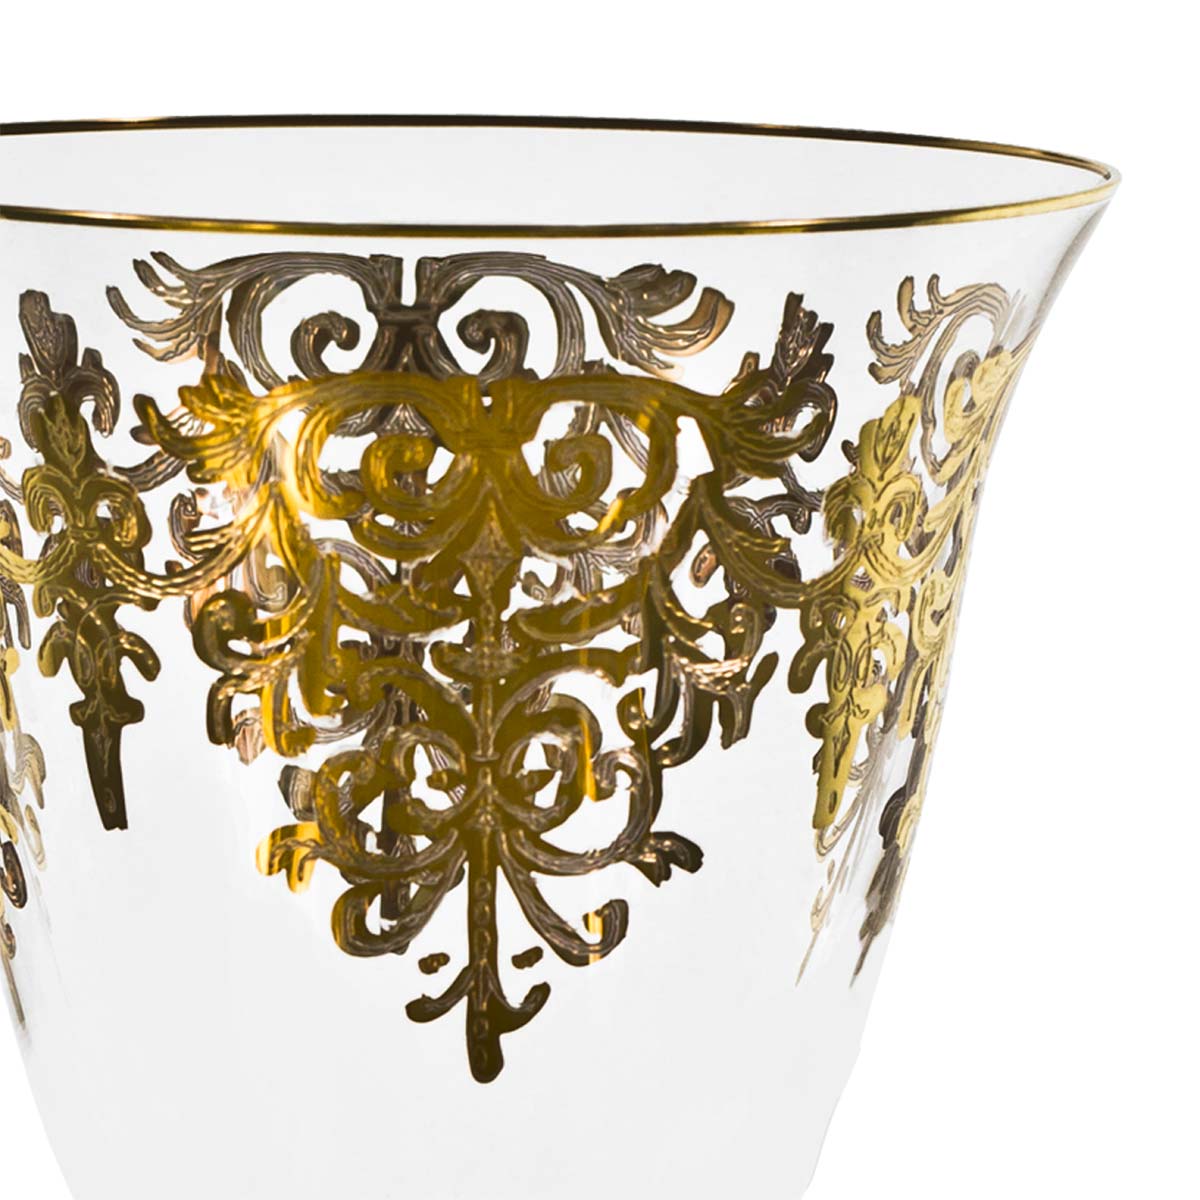 Prestigioso servizio di bicchieri decorato a mano in oro dallo stile classico - Giulia